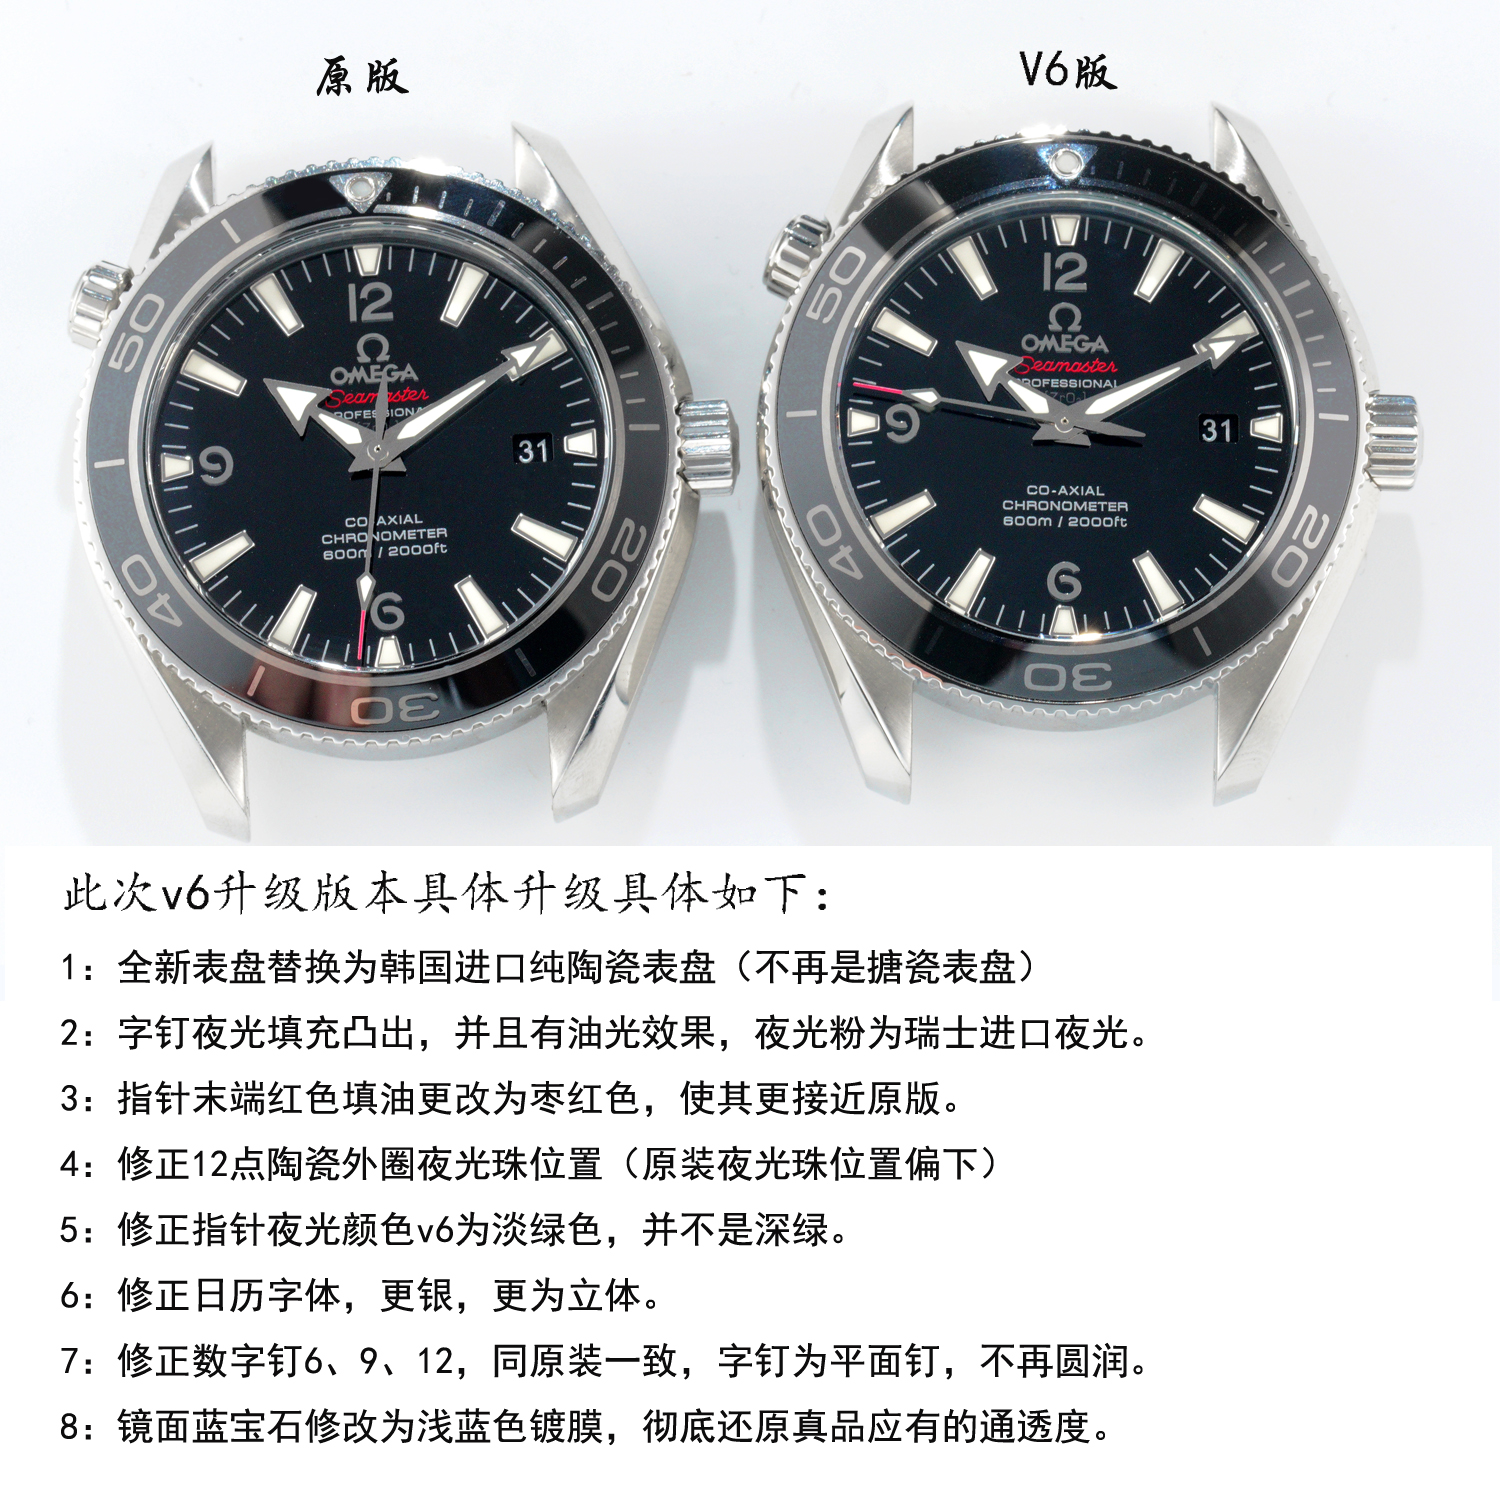 2023082803072947 - 歐米茄海馬高仿手錶對比 VS歐米茄海馬222.30.42.20.01.001￥3480